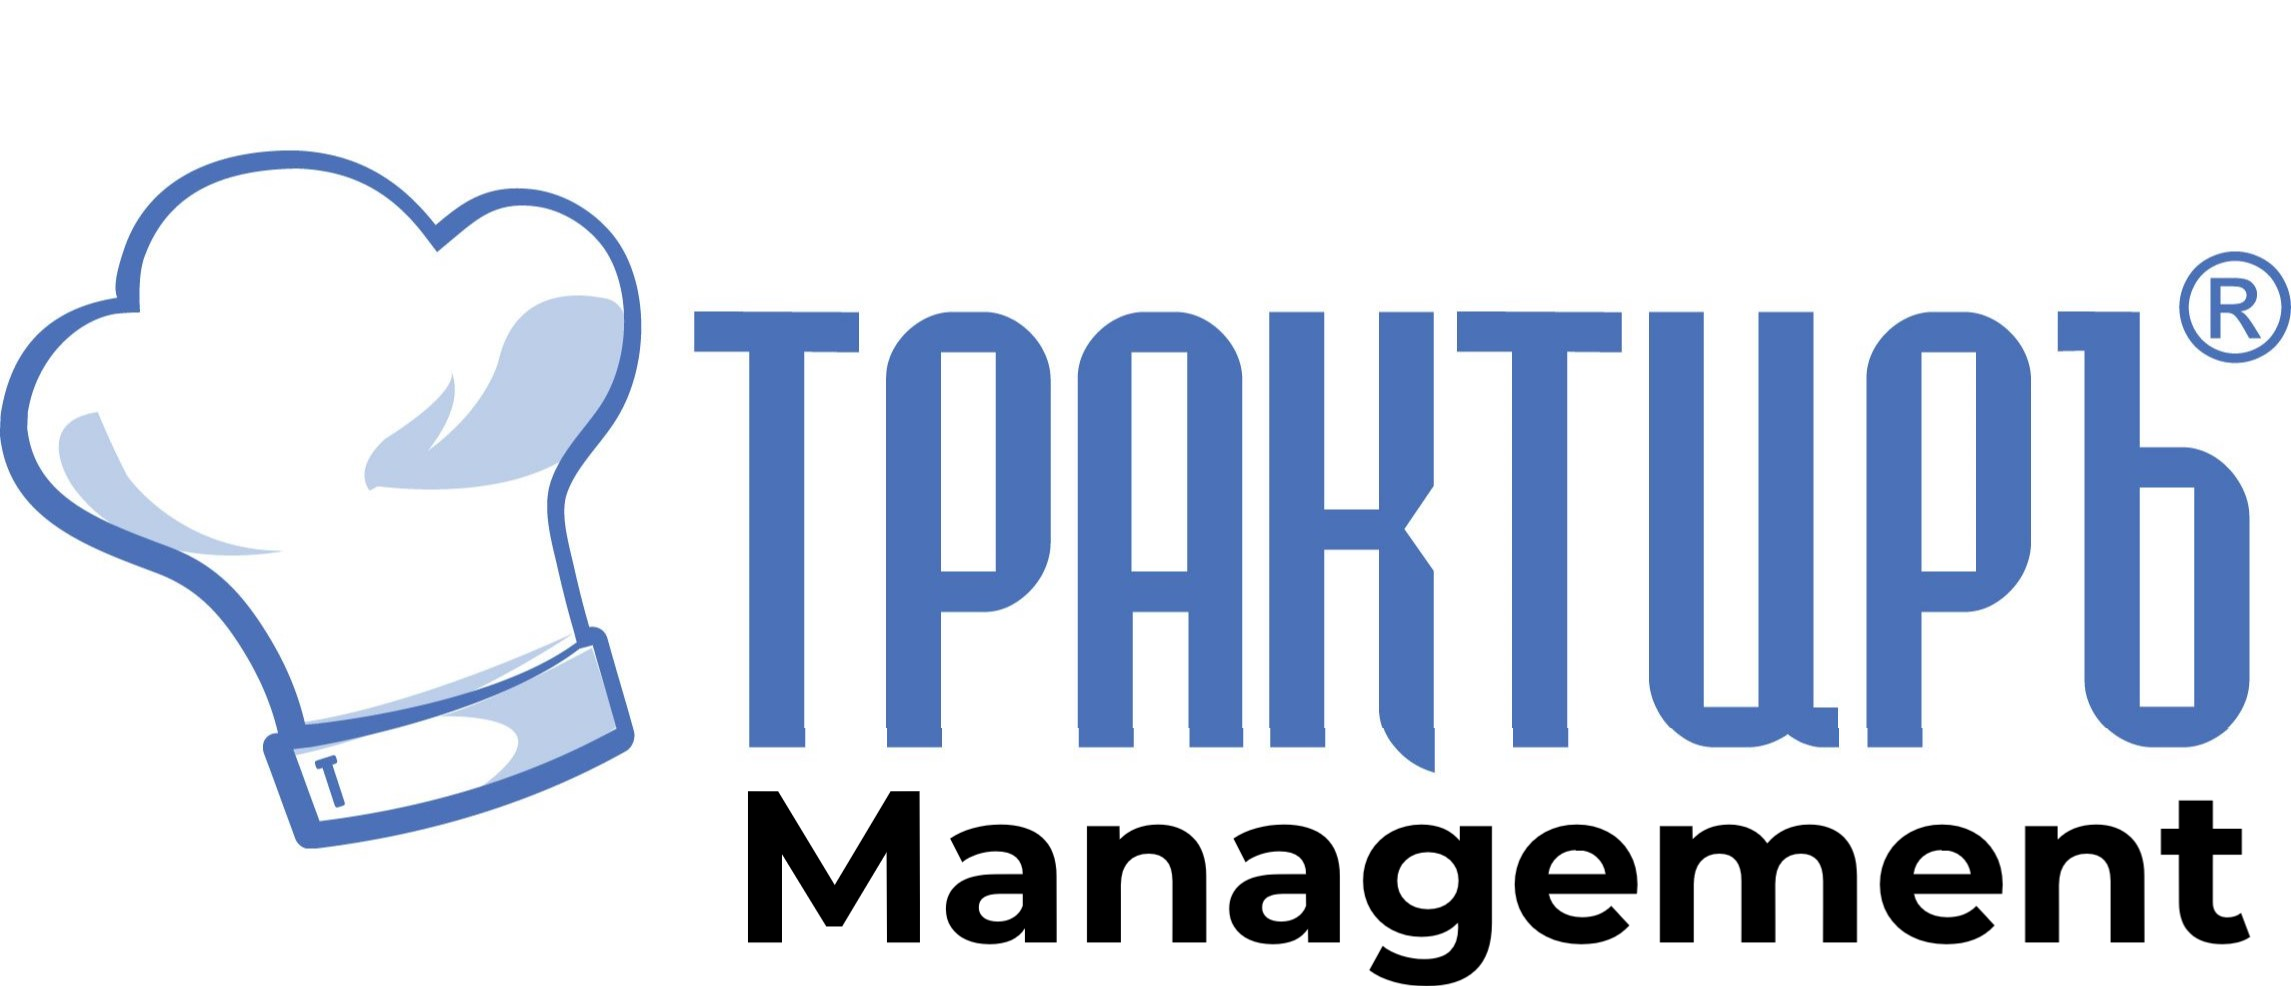 Трактиръ: Management в Прокопьевске